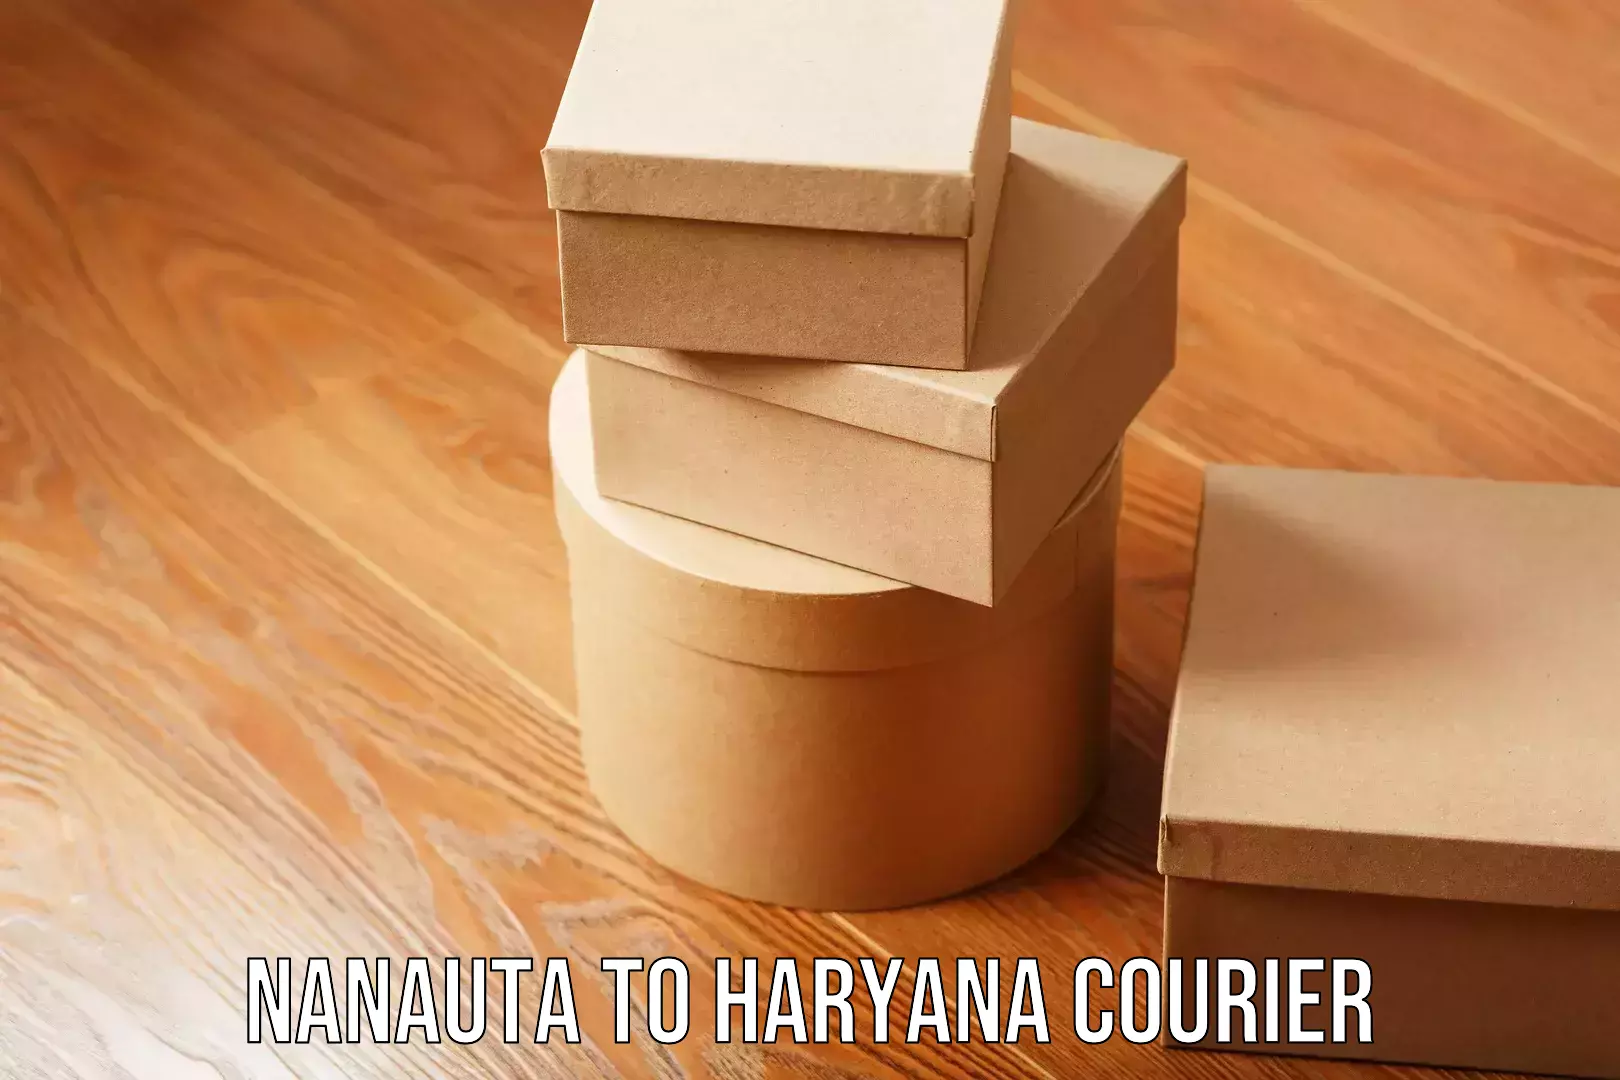 Expert furniture movers in Nanauta to Haryana